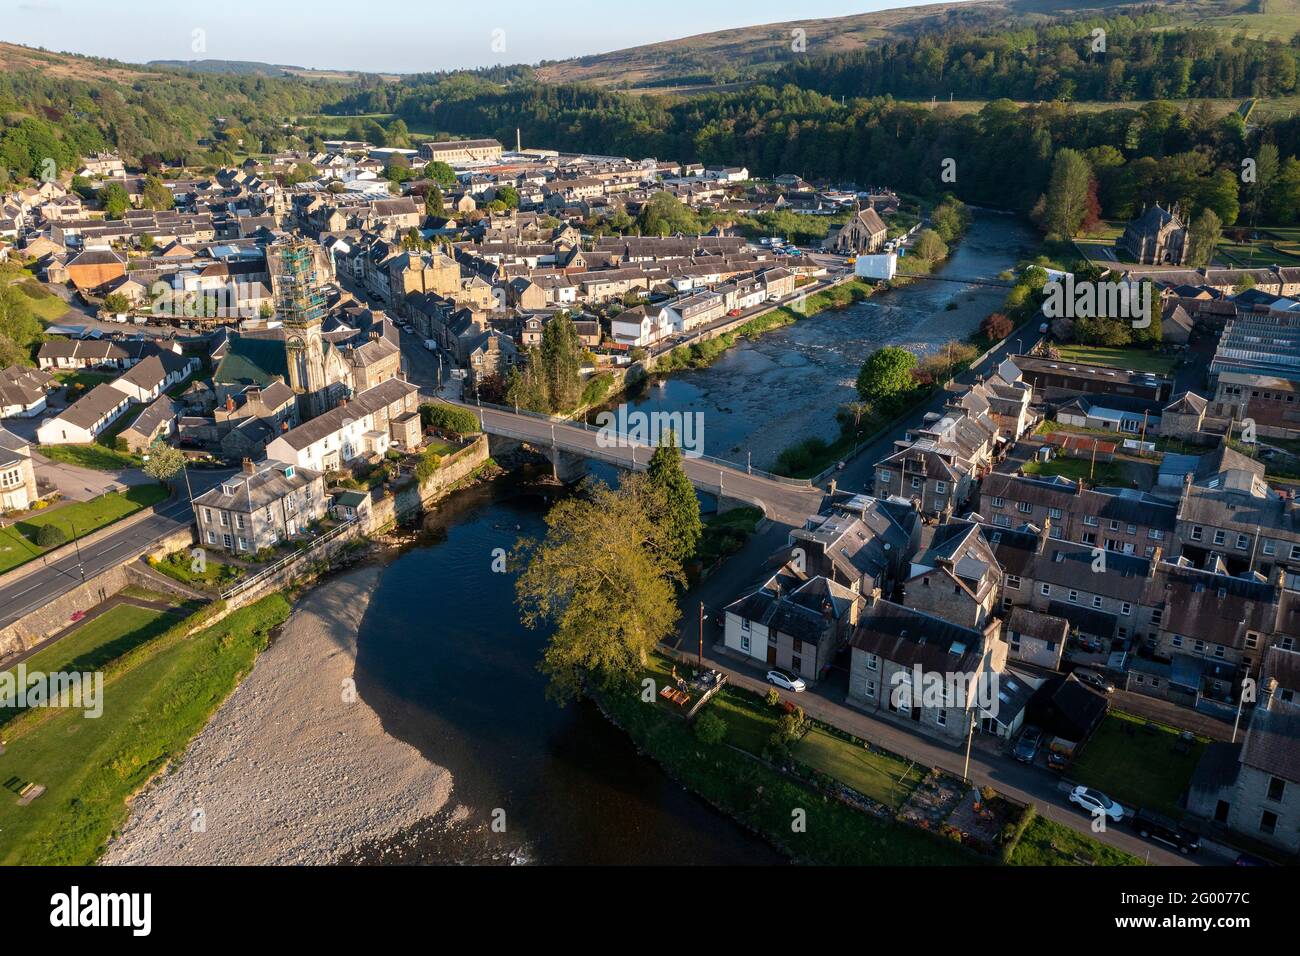 Luftaufnahme des Stadtzentrums von Langholm an der Kreuzung des Flusses Esk und des Flusses EWS, Dumfries & Galloway, Scottish Borders, Schottland, Großbritannien. Stockfoto